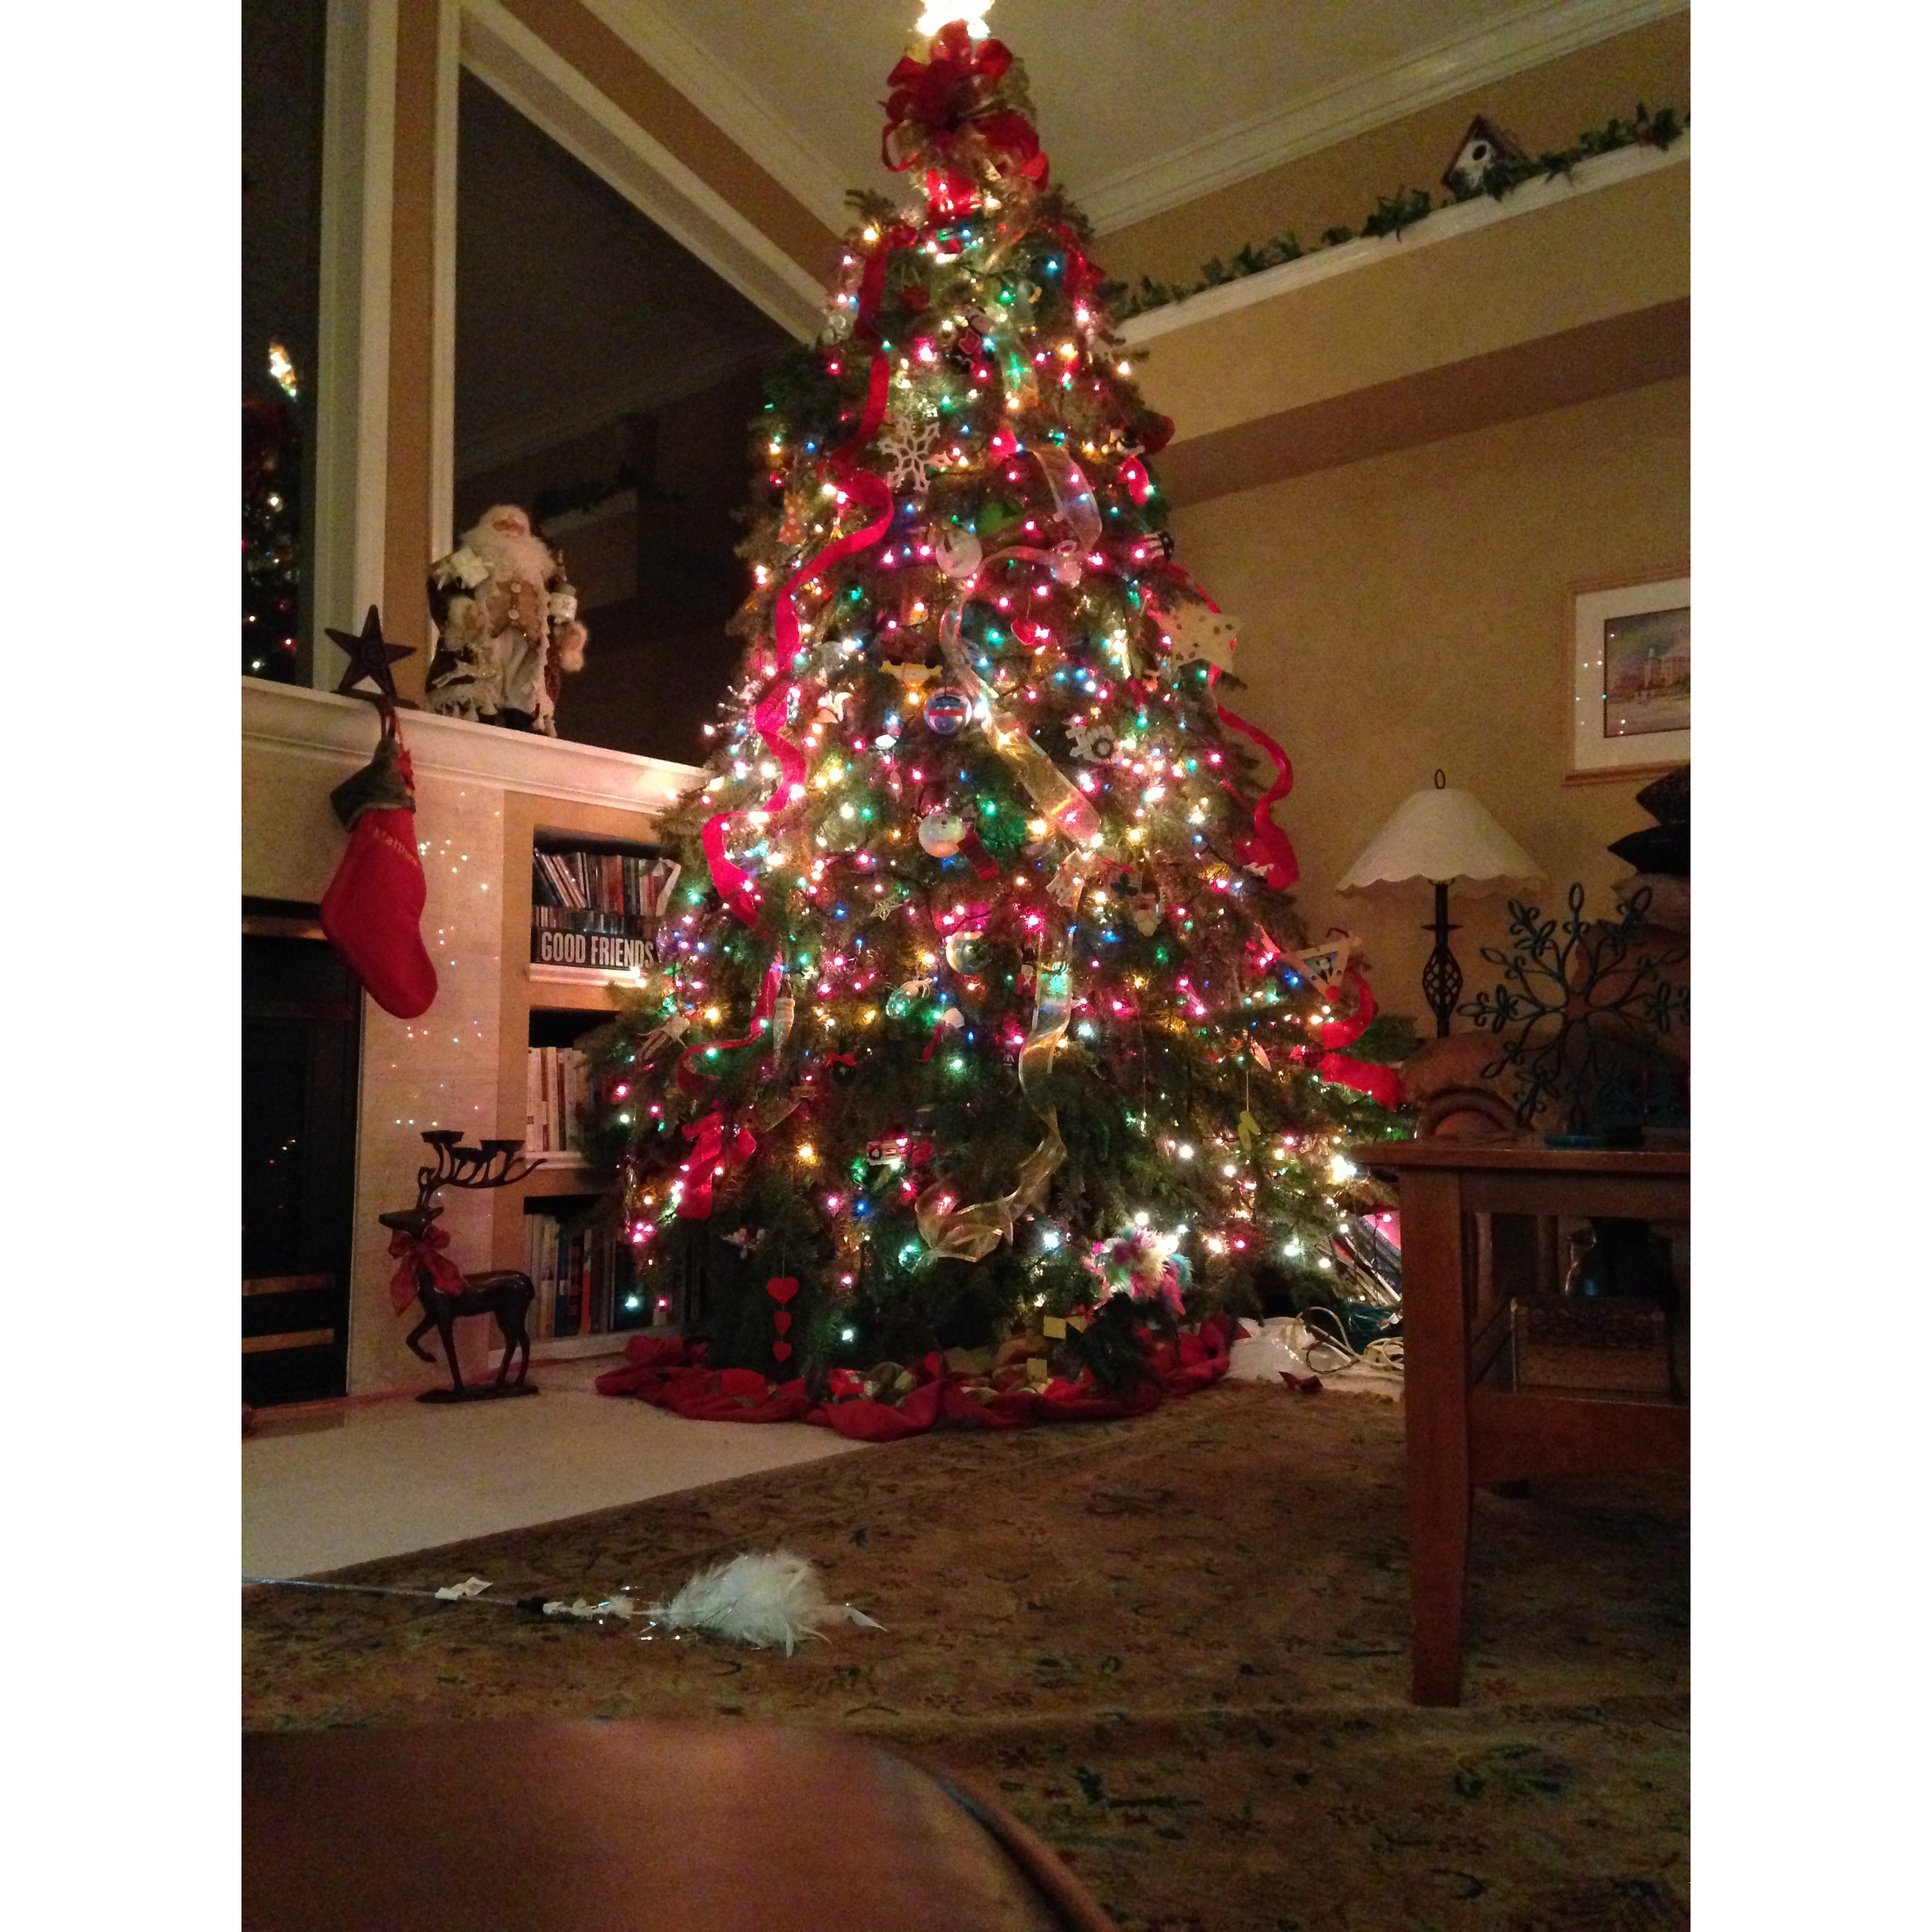 Dave's Christmas Tree Lot - Brandon, FL 33511 - (813)843-8182 | ShowMeLocal.com